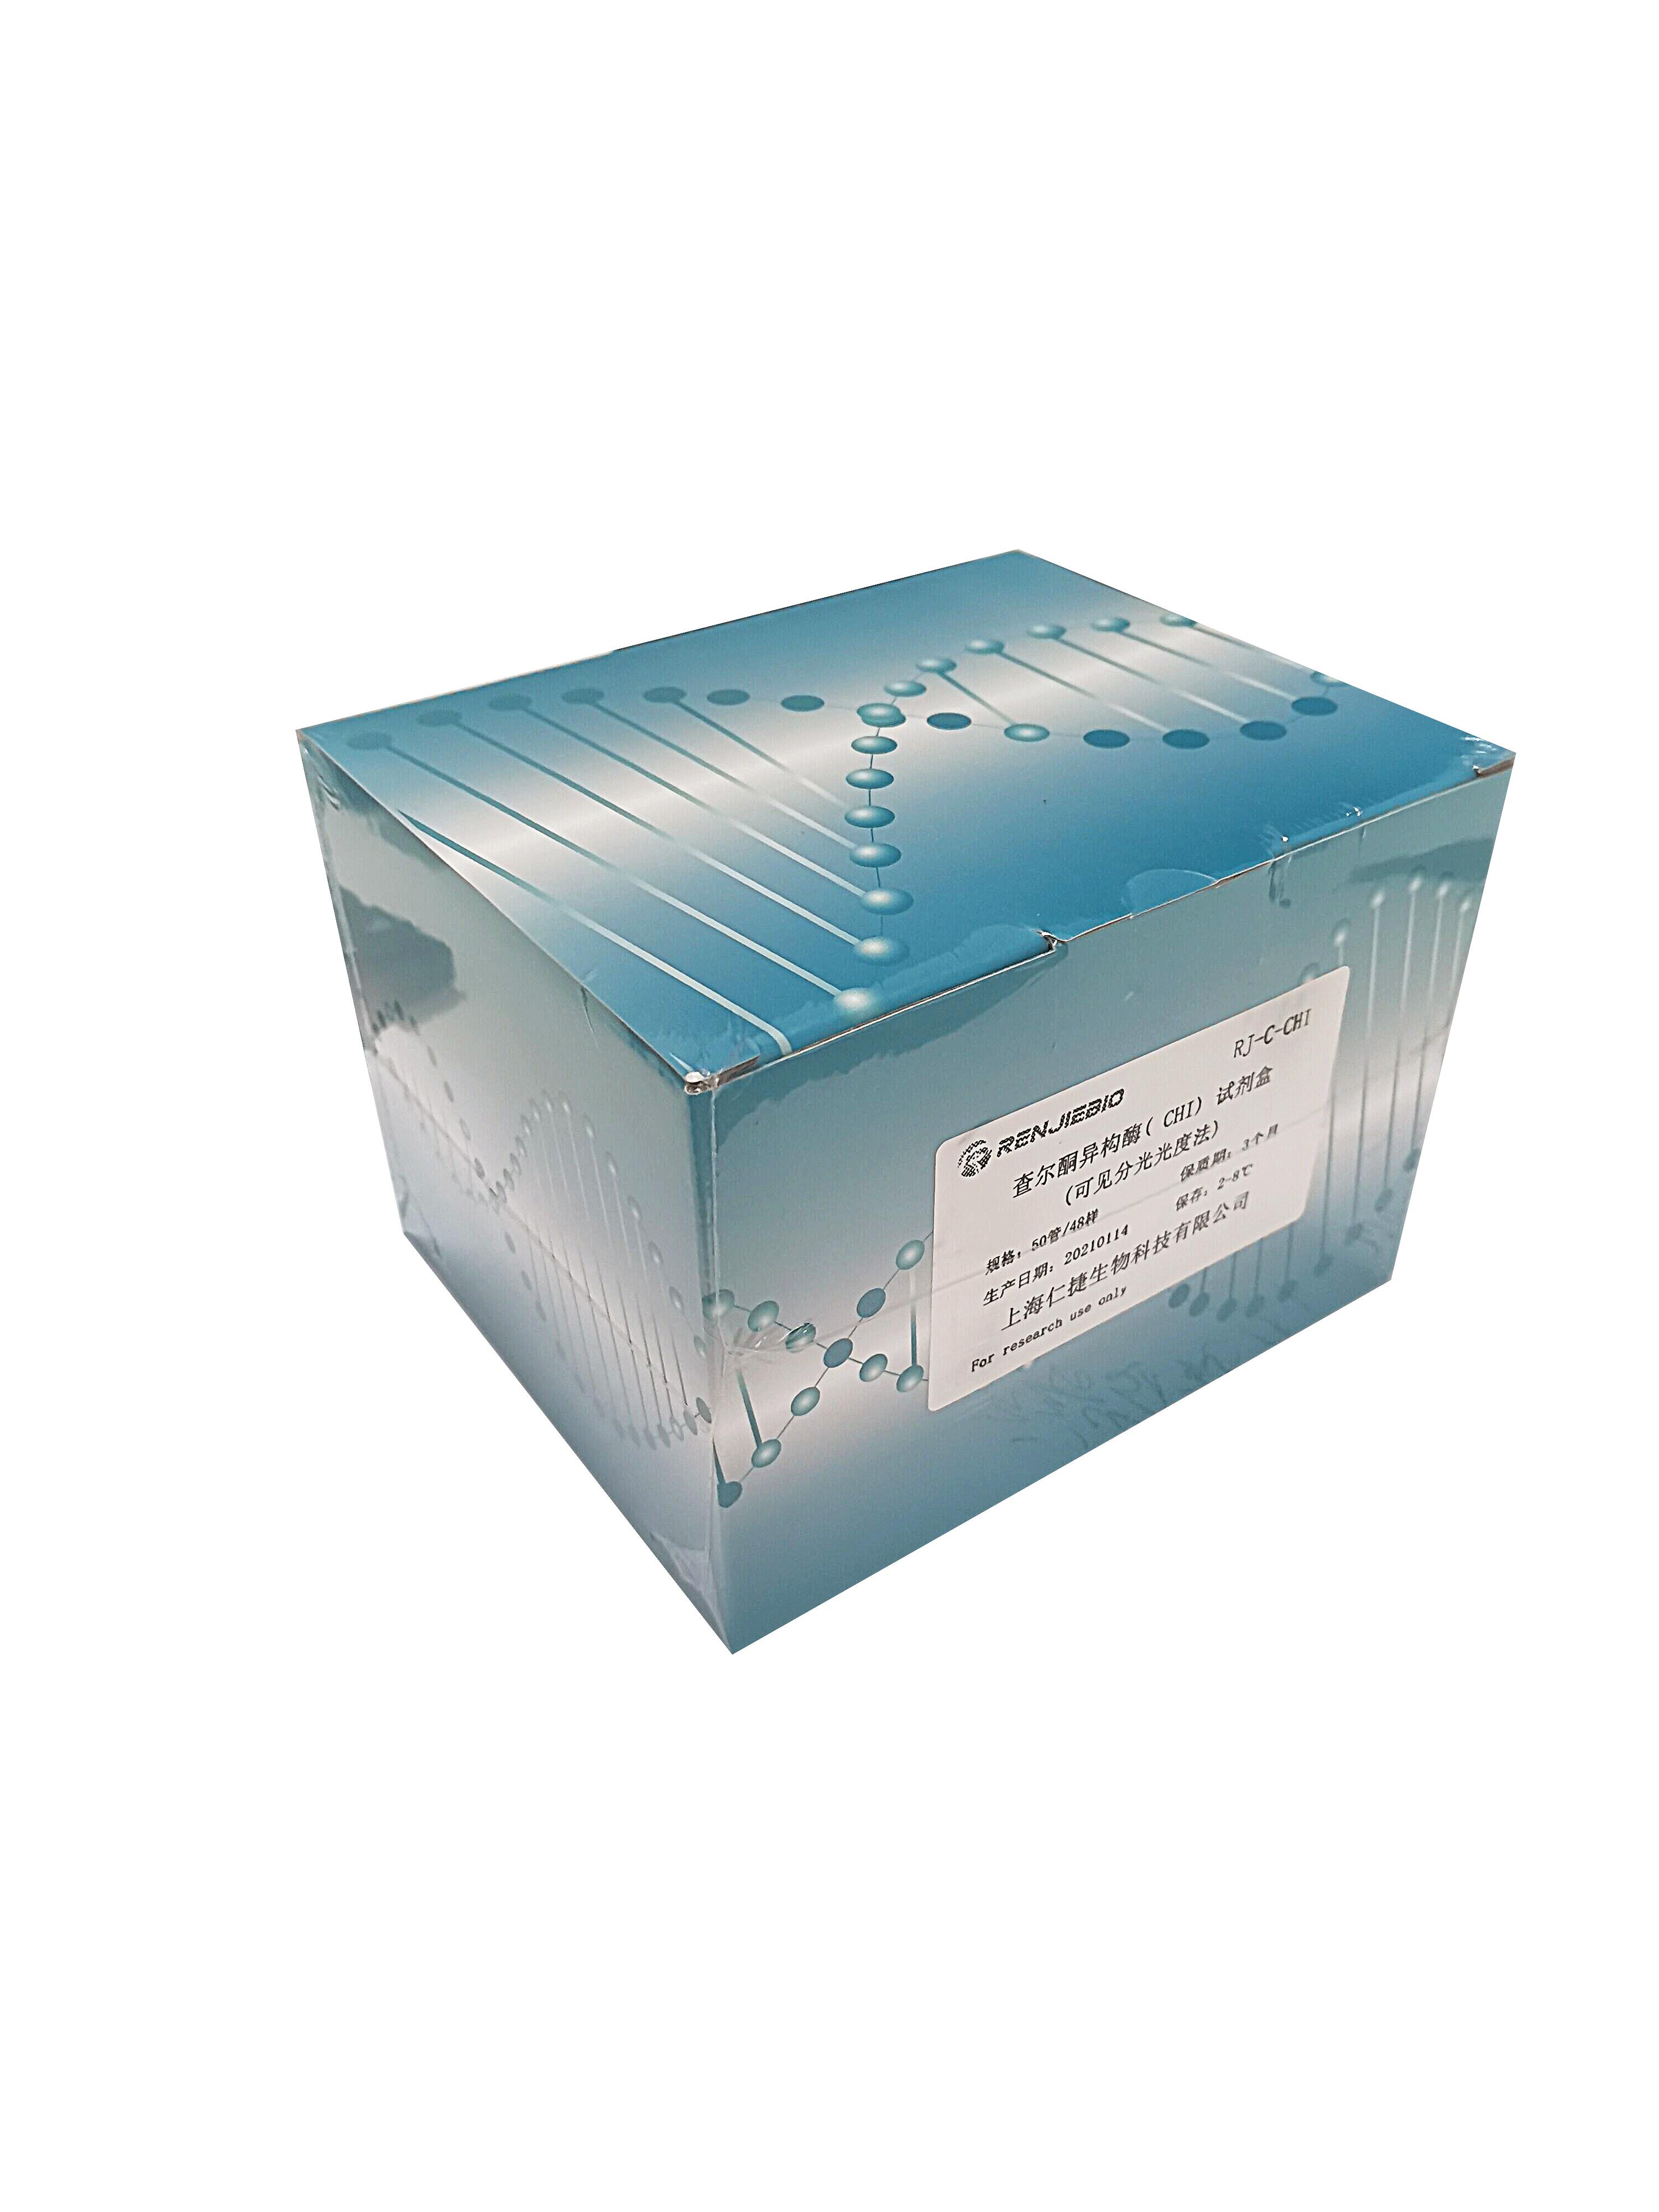 海藻糖含量测试盒